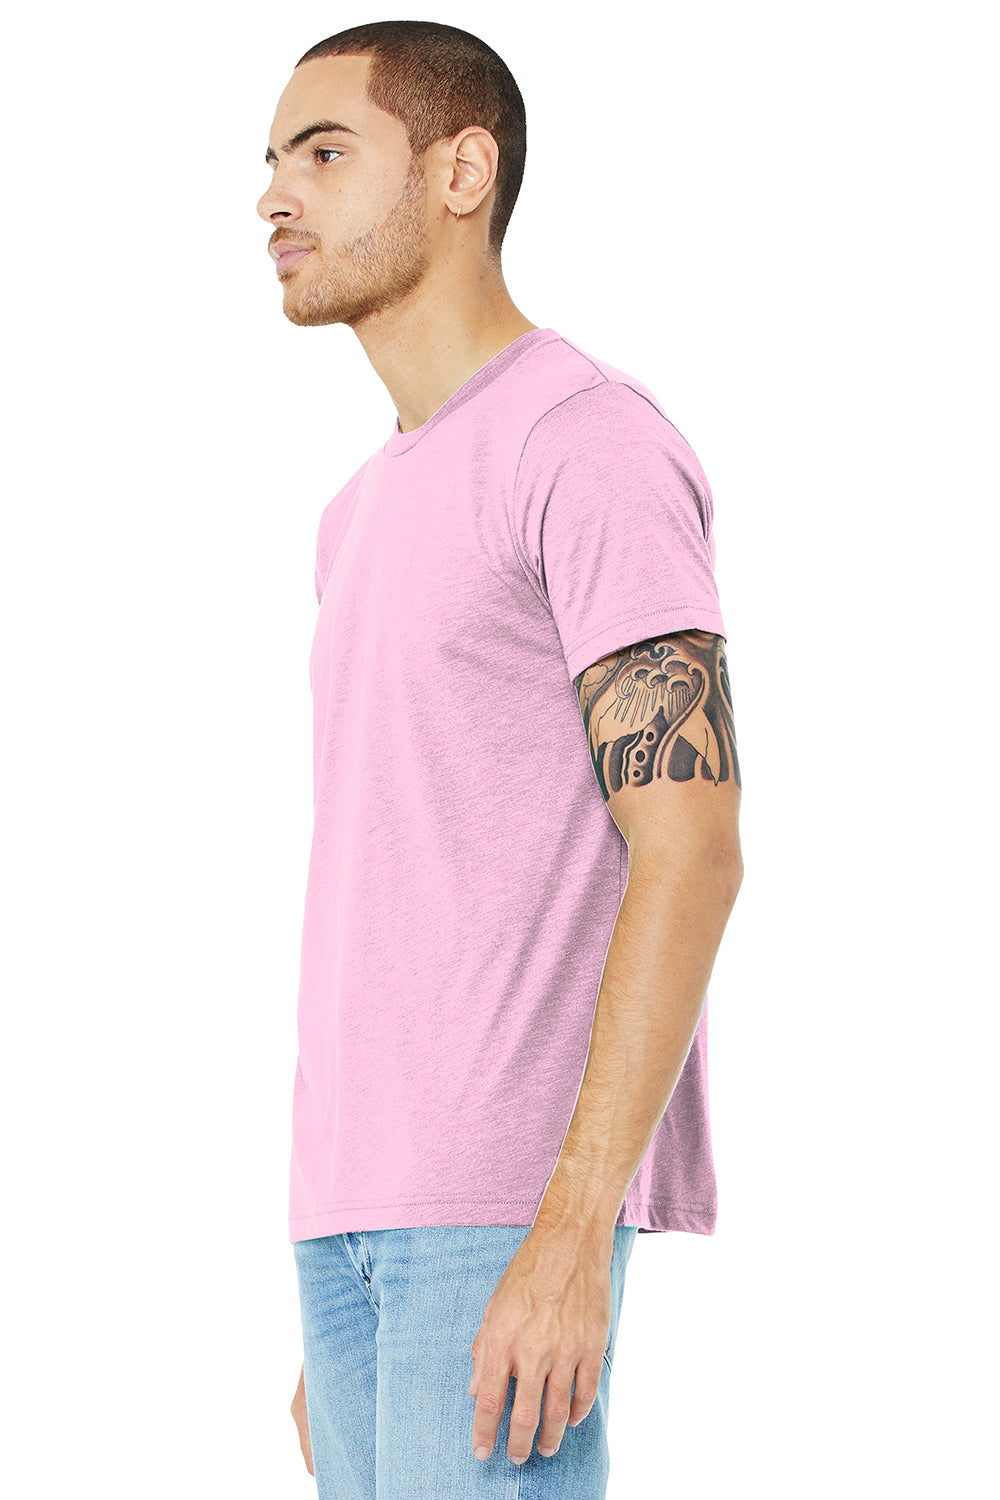 Bella + Canvas BC3413/3413C/3413 Mens Short Sleeve Crewneck T-Shirt Lilac Pink Model 3Q